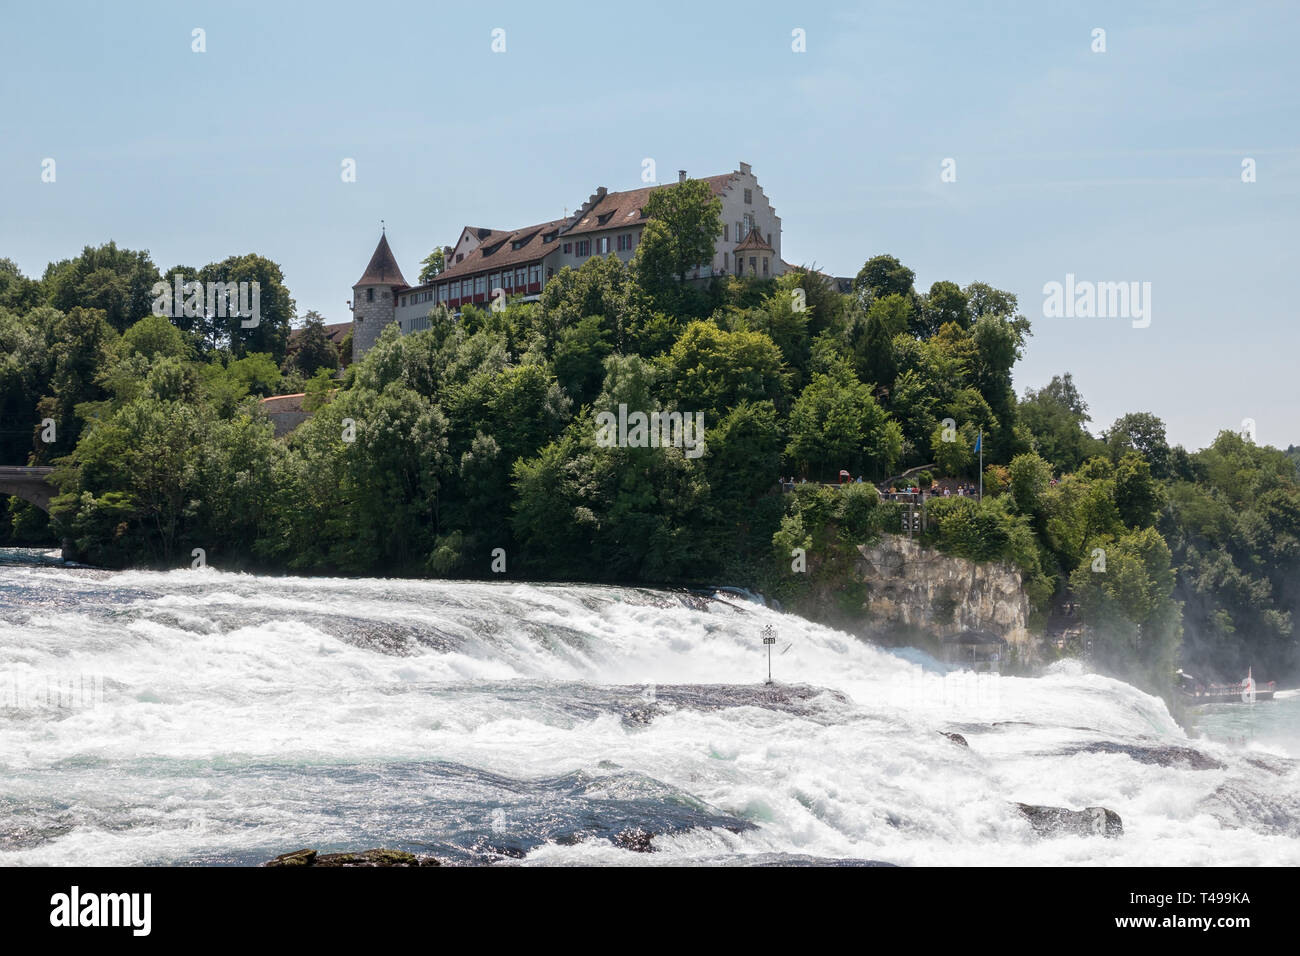 Der Rheinfall, der größte Wasserfall Europas in Schaffhausen, Schweiz. Sommer Landschaft, Sonnenschein Wetter, blauer Himmel und sonnigen Tag Stockfoto